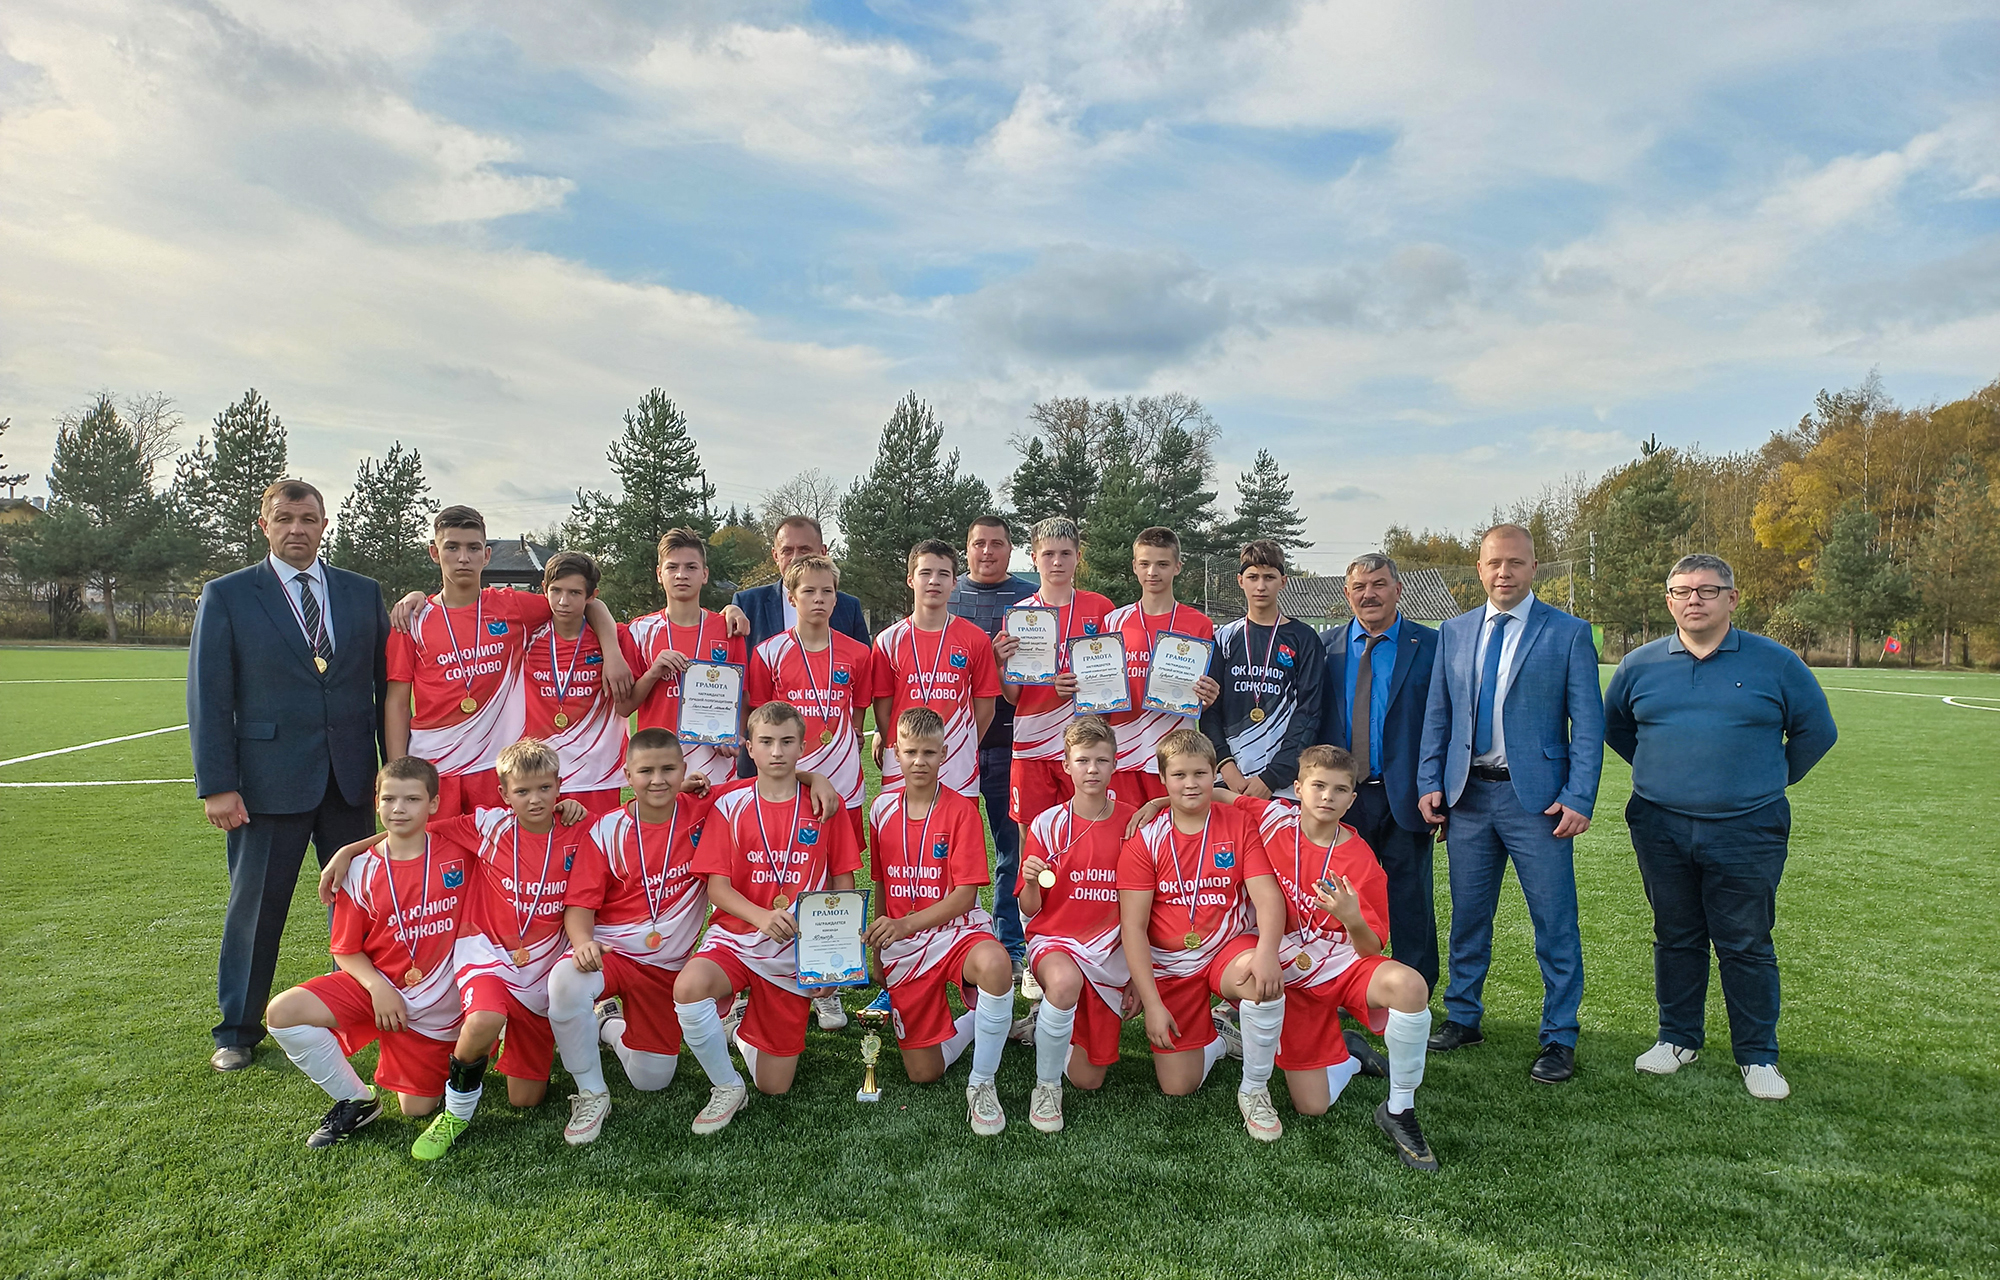 В поселке Сонково Тверской области открыли футбольное поле